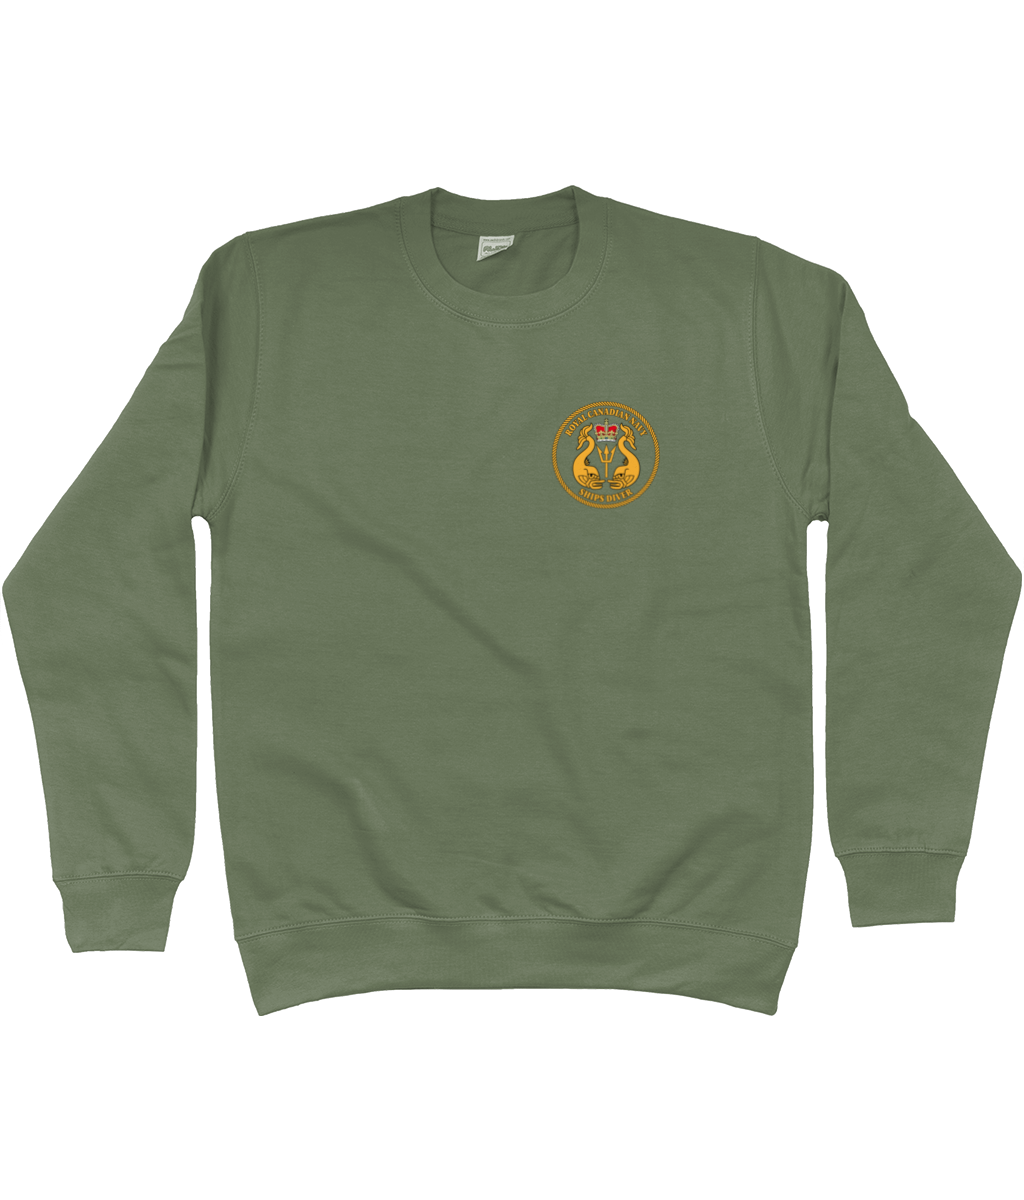 88 - Royal Canadian Navy Ships Diver - Printed Sweatshirt